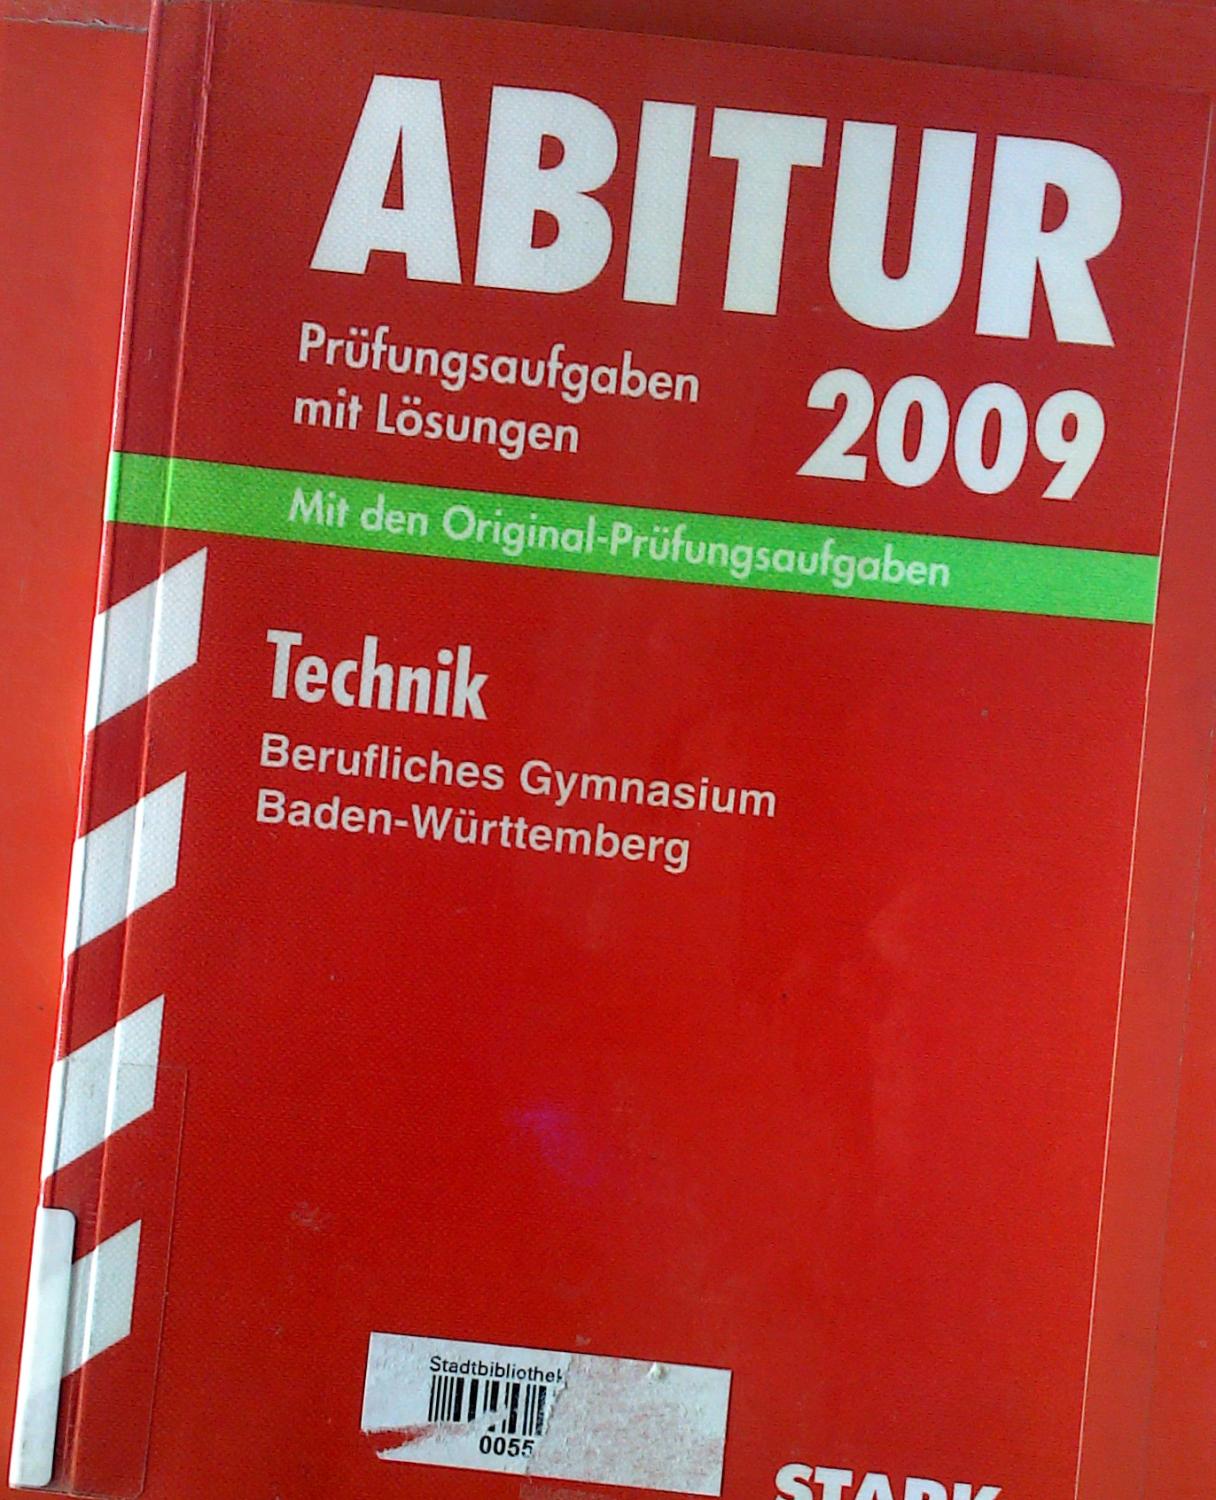 Abtiur 2009. Prüfungsaufgaben mit Lösungen. Mit den Original-Prüfungsaufgaben. Technik. Berufliches Gymnasium Baden-Württemberg, 2004 - 2008. - Gerhard Weidner u. a.